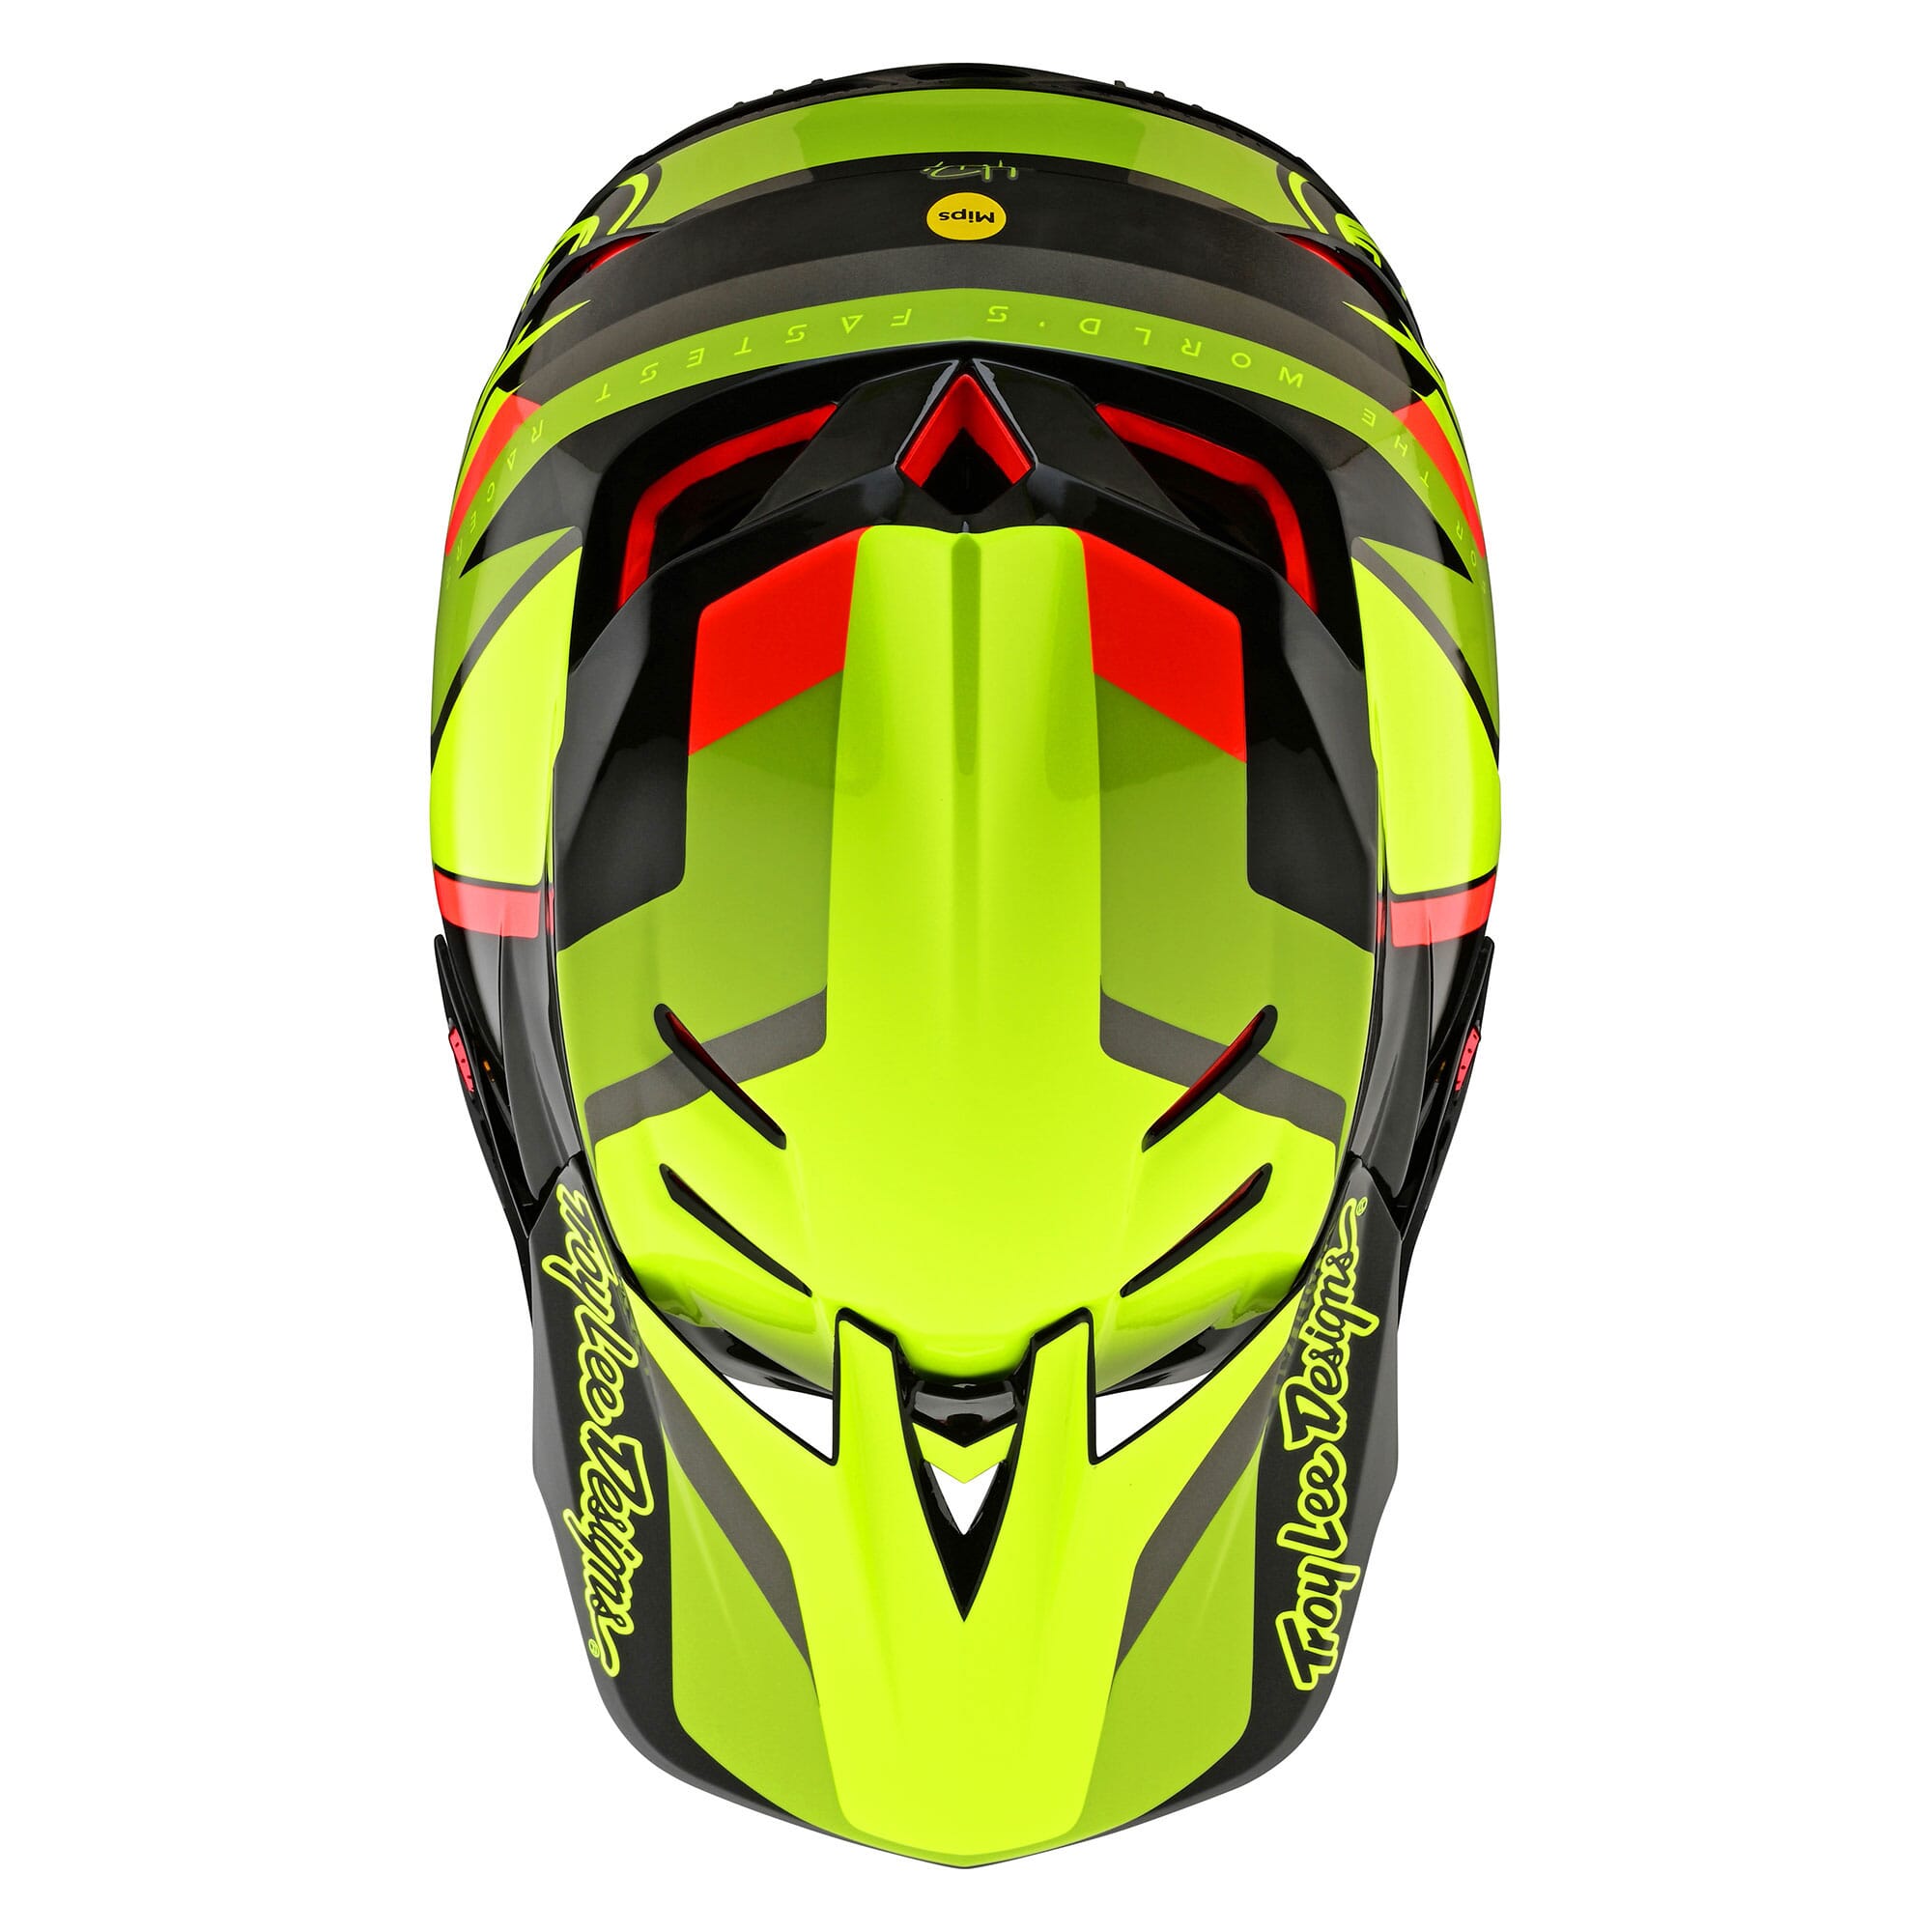 Troy Lee Designs D4 Carbon MIPS Helmet